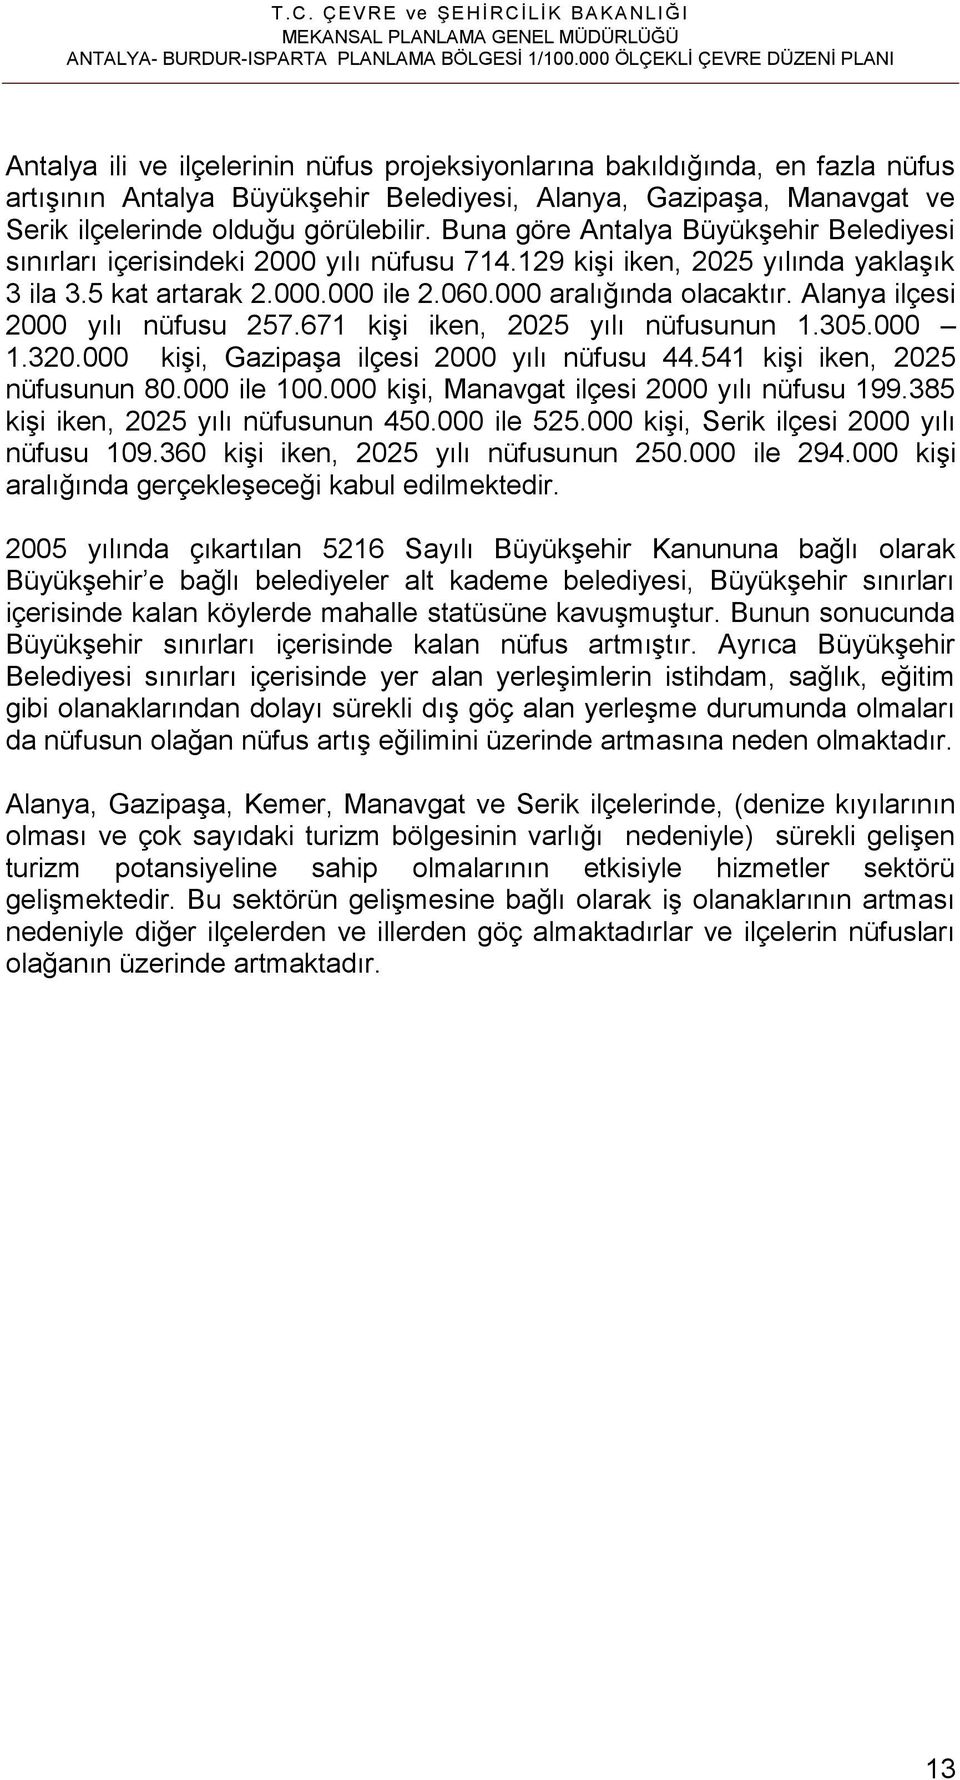 olduğu görülebilir. Buna göre Antalya Büyükşehir Belediyesi sınırları içerisindeki 2000 yılı nüfusu 714.129 kişi iken, 2025 yılında yaklaşık 3 ila 3.5 kat artarak 2.000.000 ile 2.060.